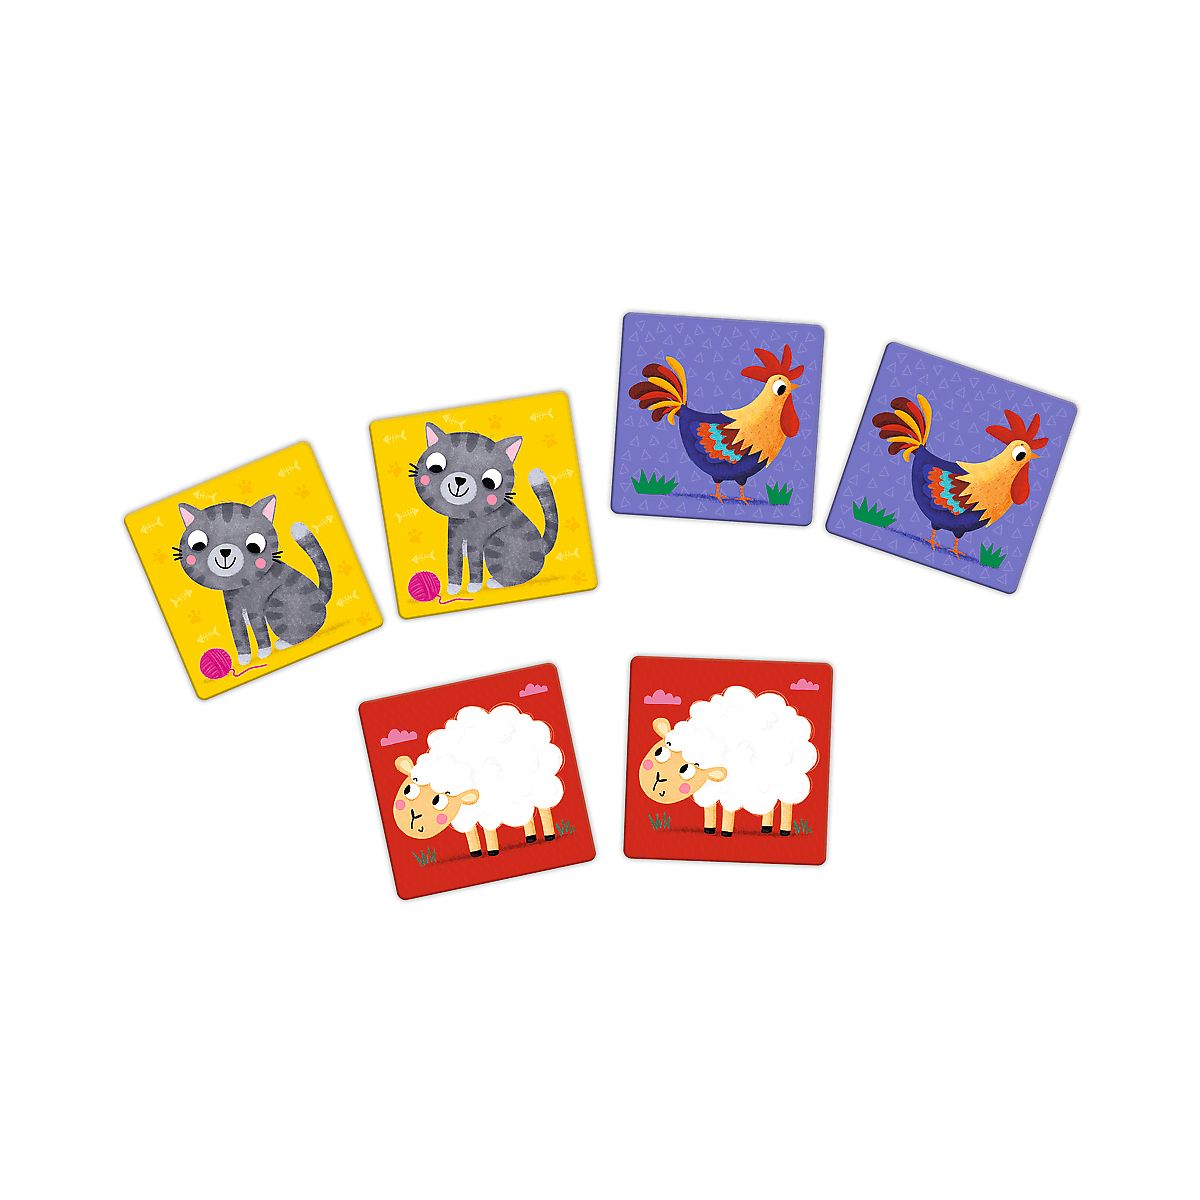 Gra pamięciowa Trefl Memos Maxi Zwierzątka farma (02266)